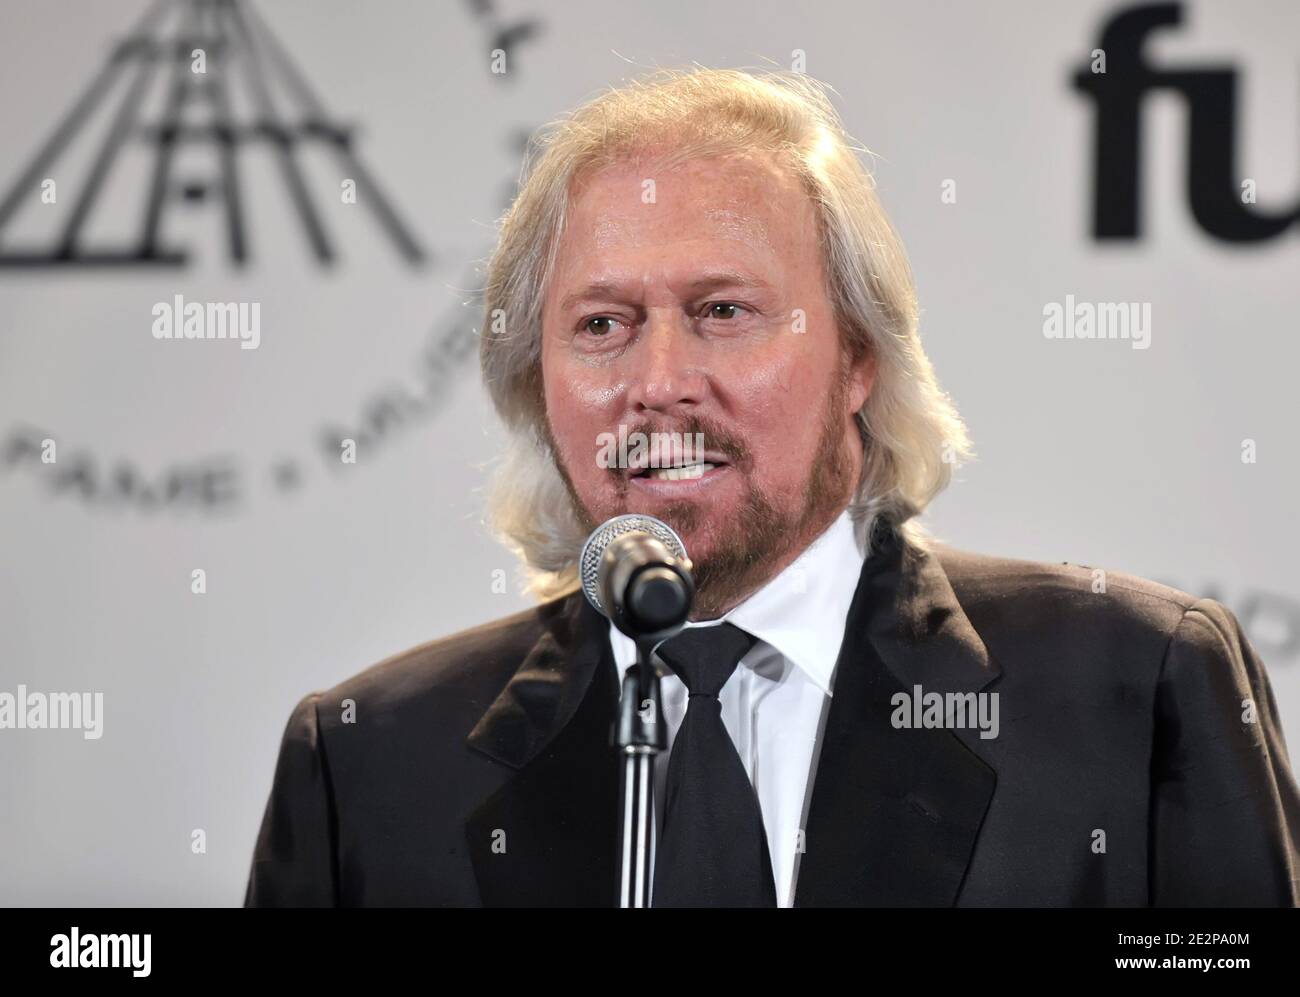 Der Musiker Barry Gibb von den Bee Gees nimmt am 15. März 2010 an der 25. Jährlichen Rock and Roll Hall of Fame Induction Ceremony im Waldorf Astoria in New York City, NY, USA Teil. Foto von Slaven Vlasic/ABACAPRESS.COM Stockfoto